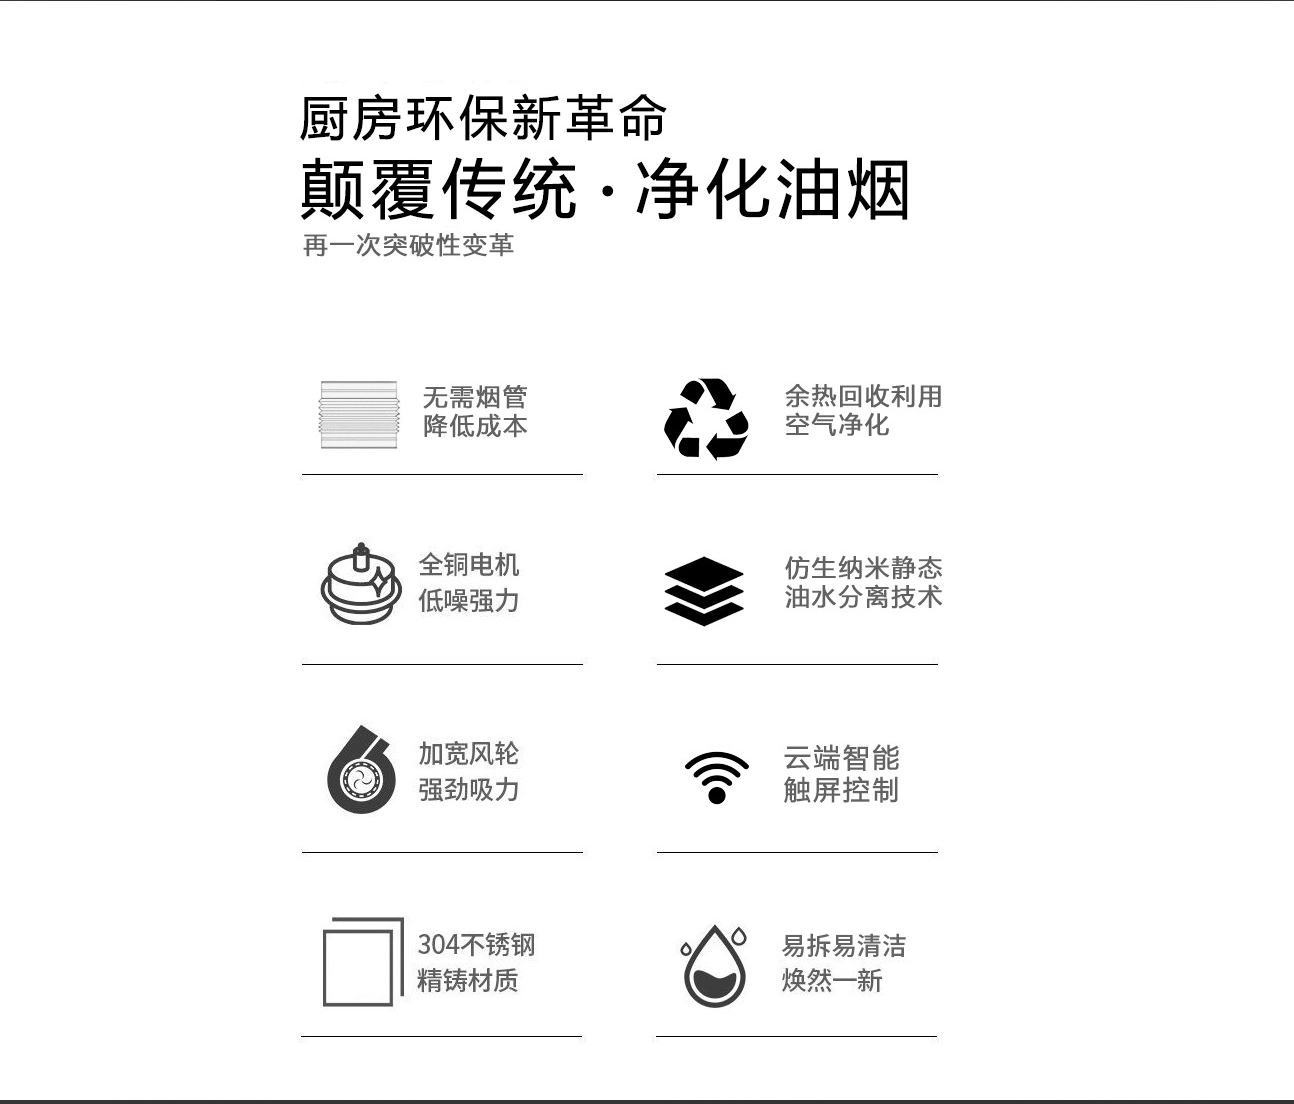 壹指蓝油烟机厨房新革命,8大优势:环保,无管道,大吸力,低噪音,内循环,易清洁,易安装